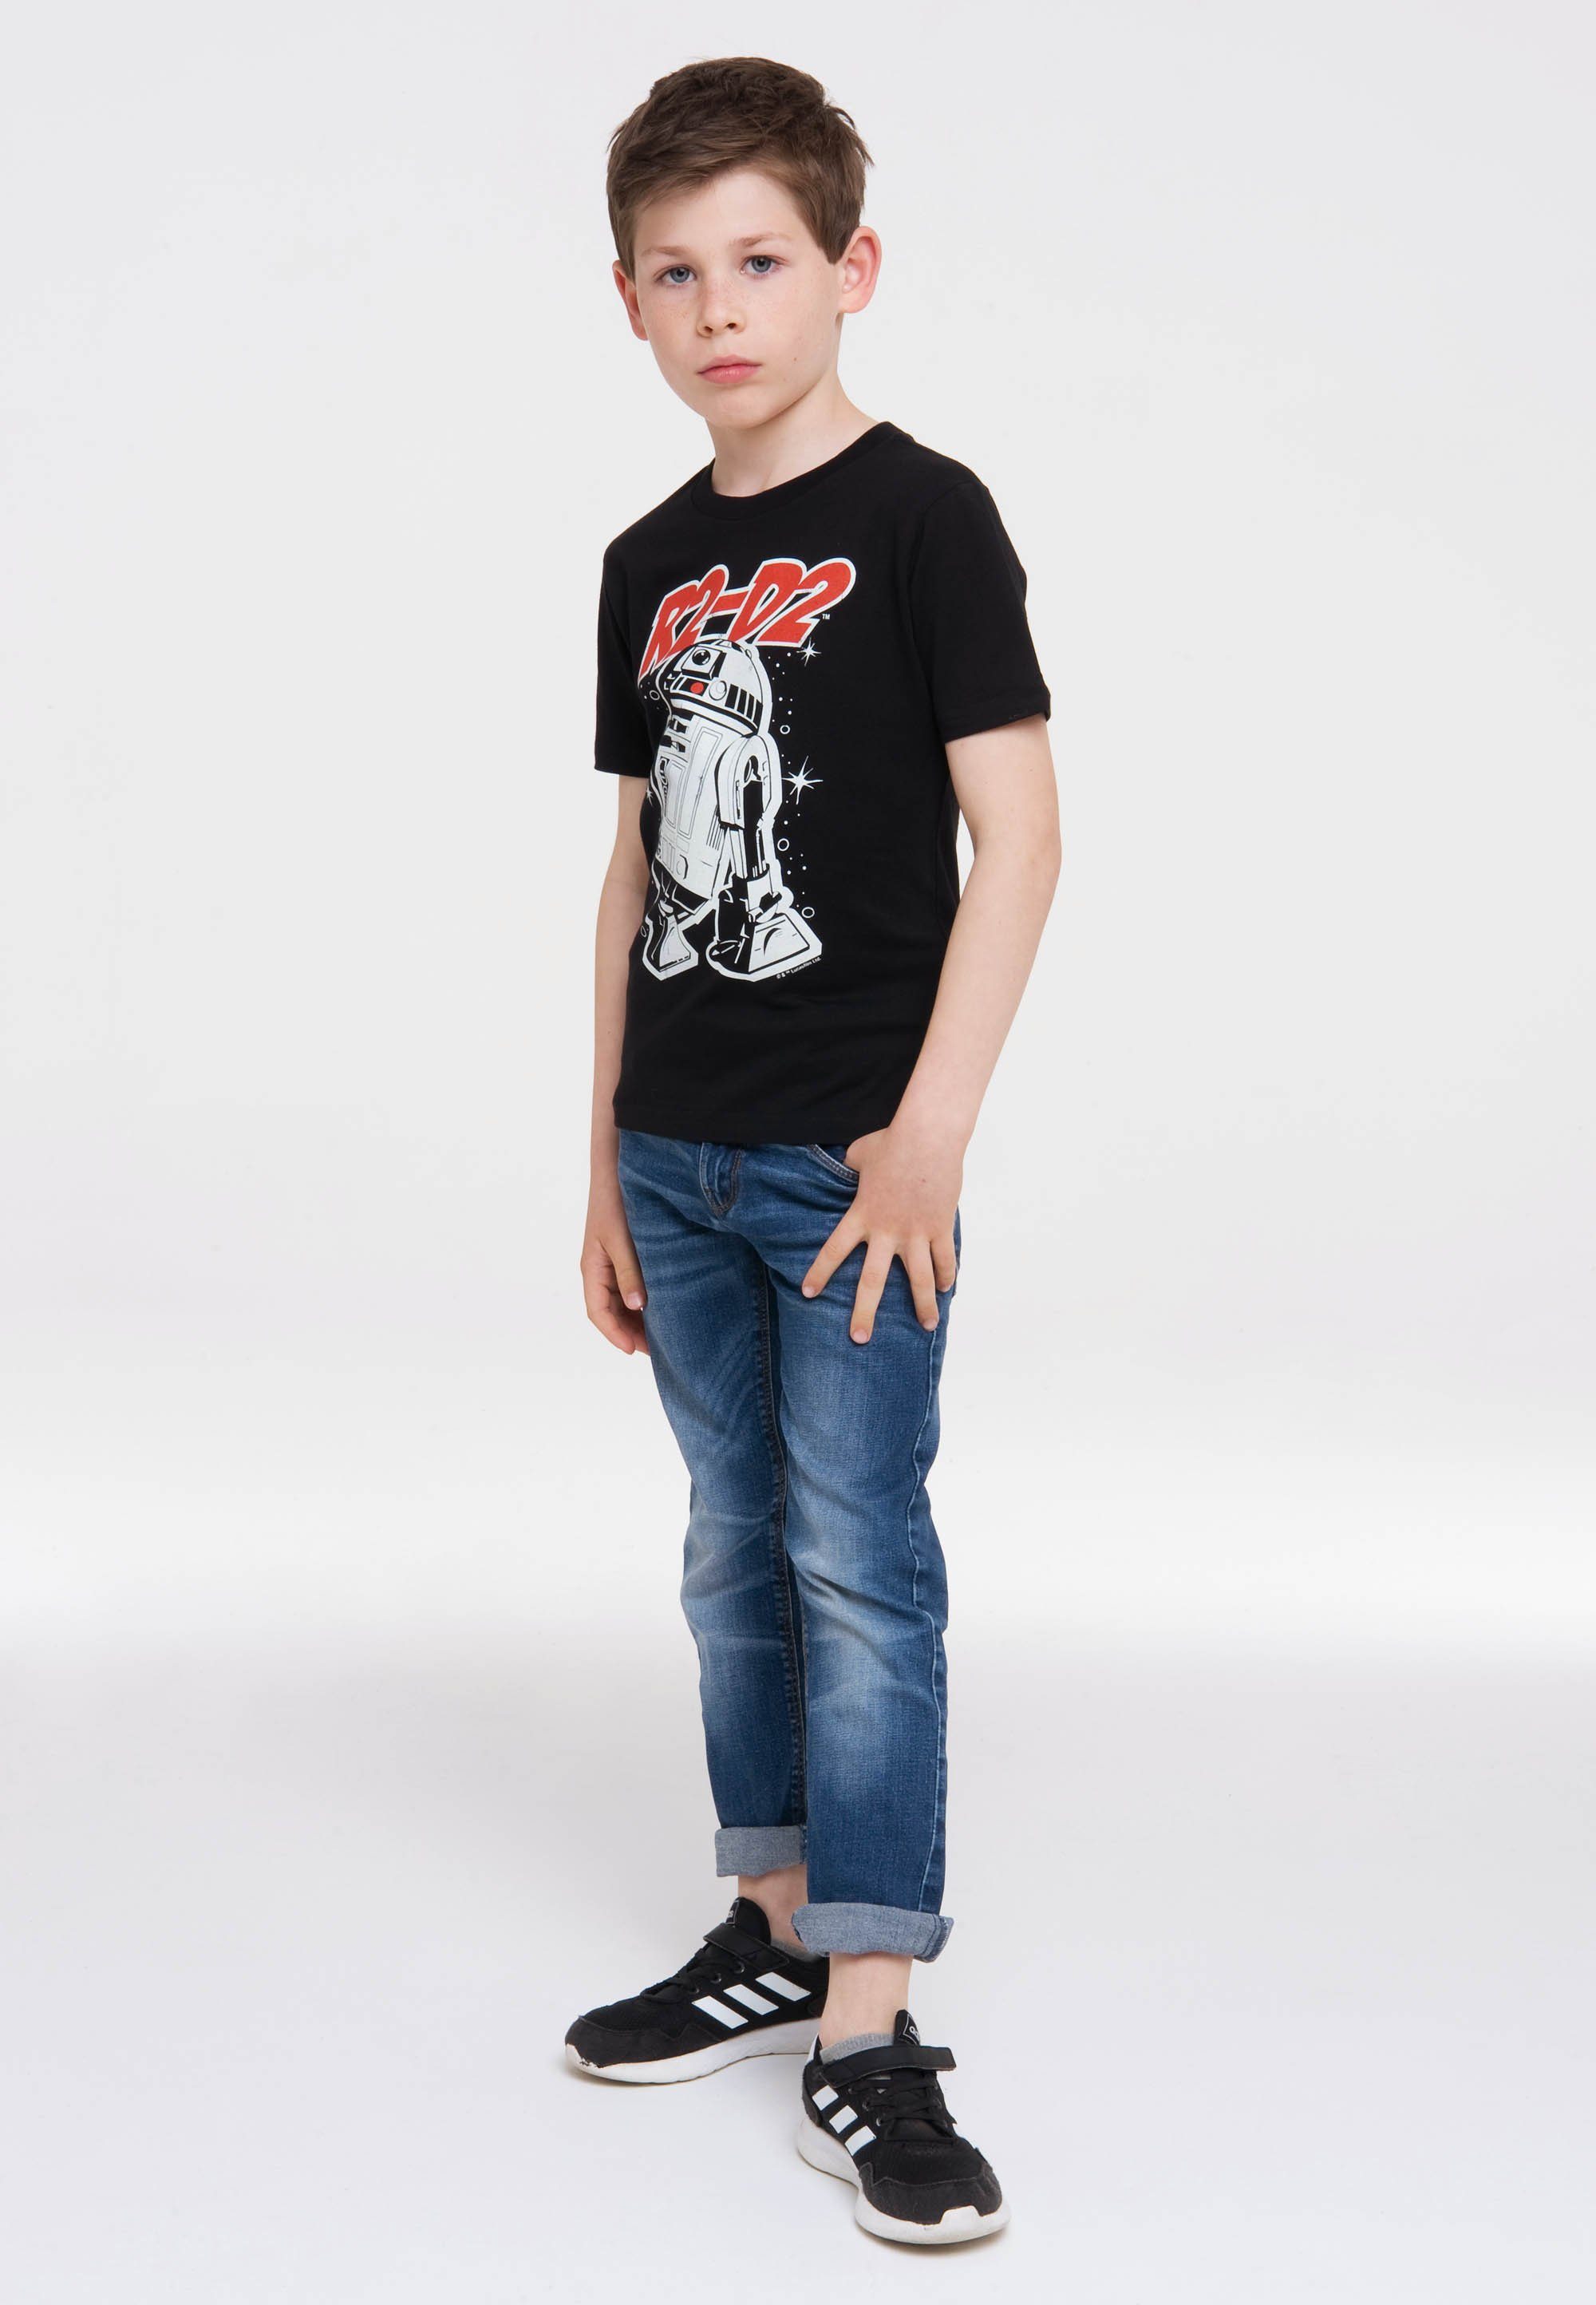 LOGOSHIRT T-Shirt Star Wars – mit Originaldesign lizenziertem R2-D2